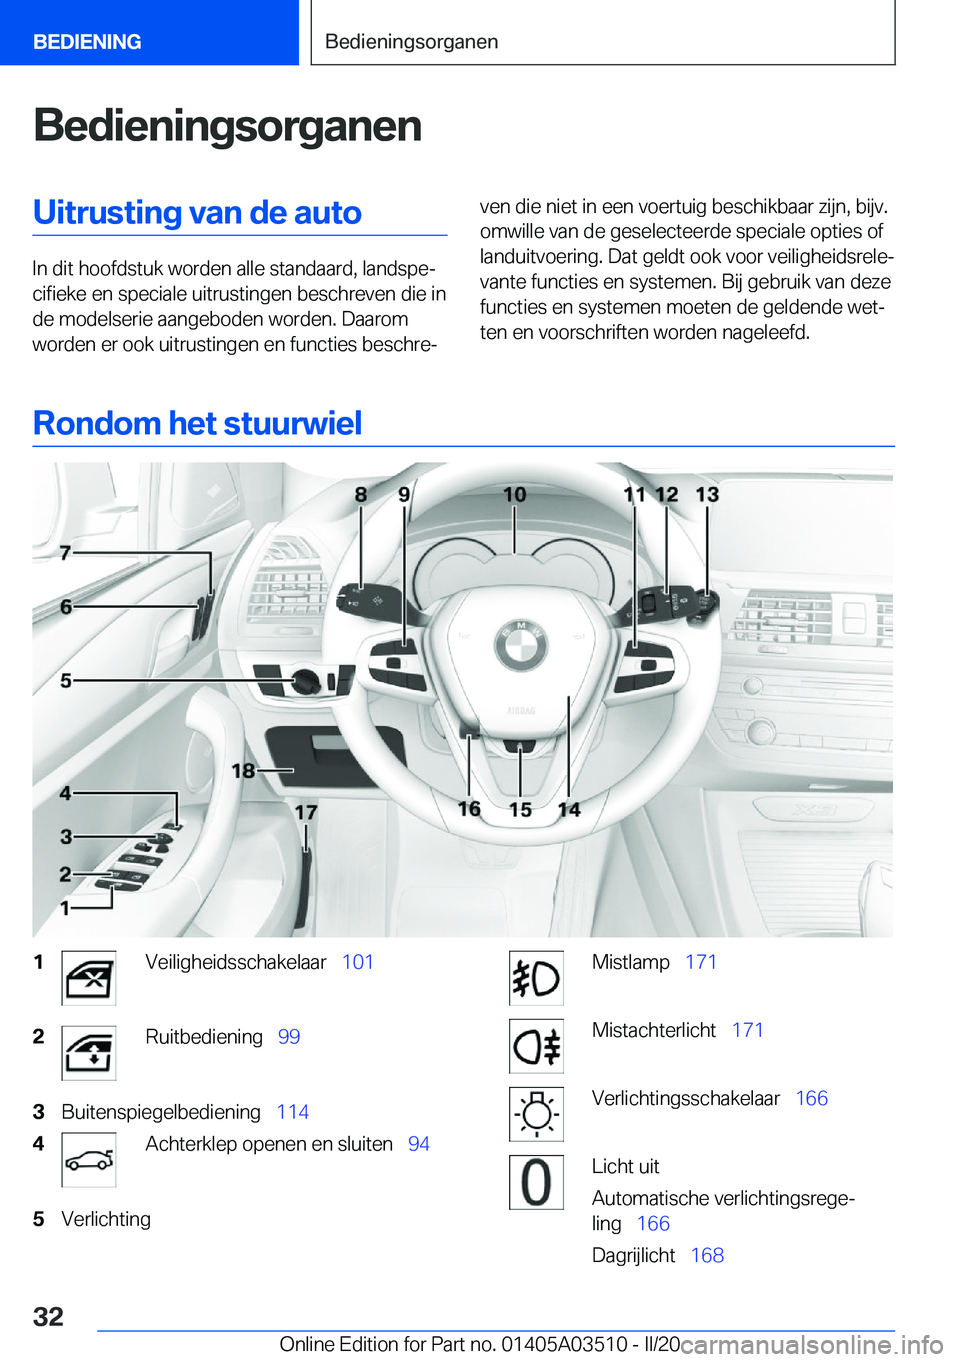 BMW X3 2020  Instructieboekjes (in Dutch) �B�e�d�i�e�n�i�n�g�s�o�r�g�a�n�e�n�U�i�t�r�u�s�t�i�n�g��v�a�n��d�e��a�u�t�o
�I�n��d�i�t��h�o�o�f�d�s�t�u�k��w�o�r�d�e�n��a�l�l�e��s�t�a�n�d�a�a�r�d�,��l�a�n�d�s�p�ej�c�i�f�i�e�k�e��e�n��s�